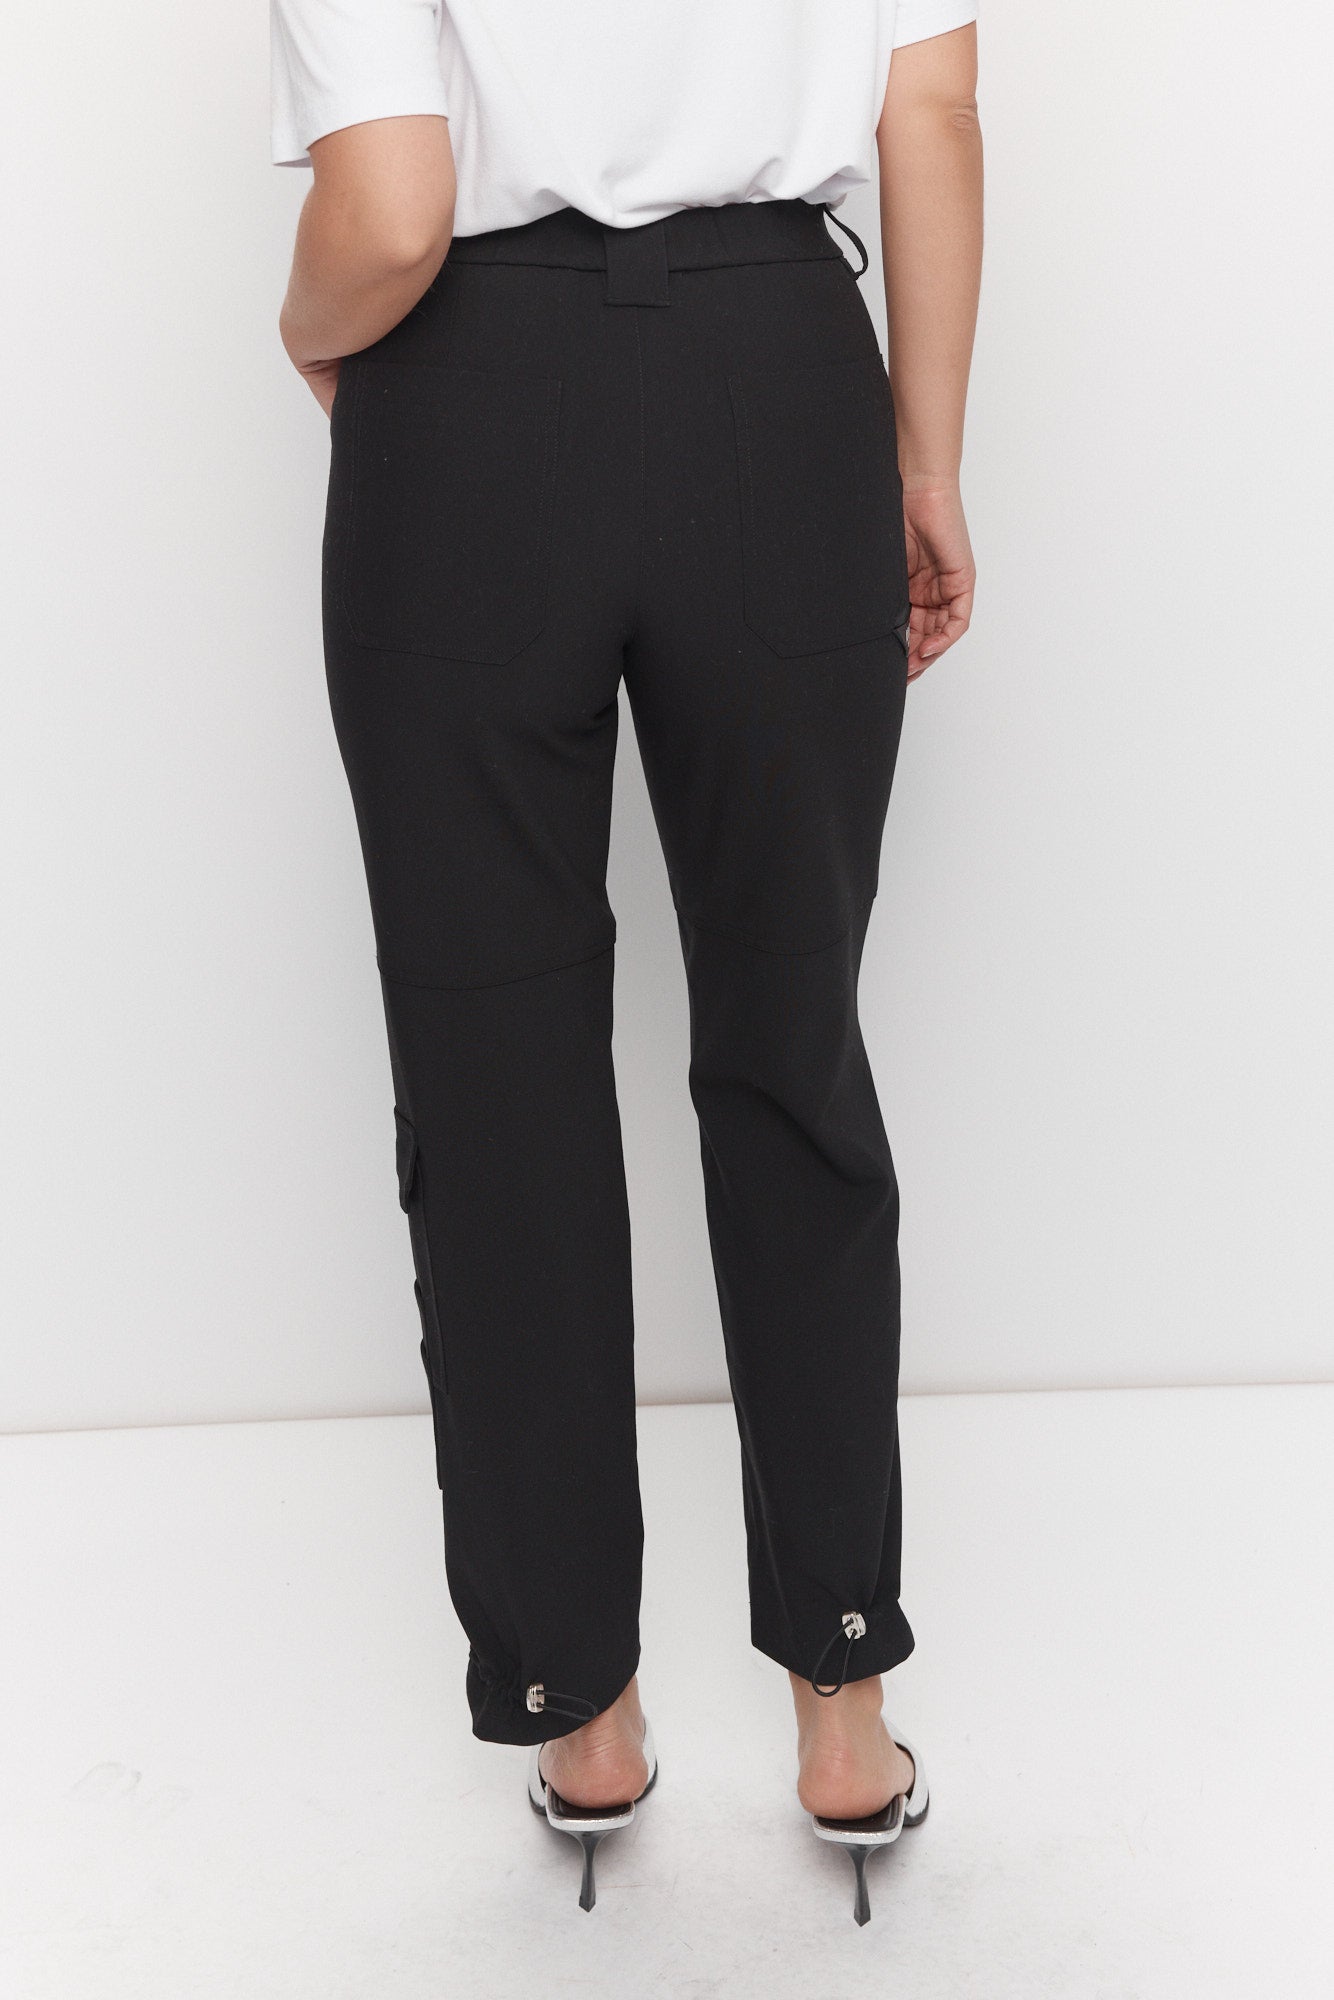 Pantalon noir cargo ajustable à la cheville | Frilay JOELLE Collection